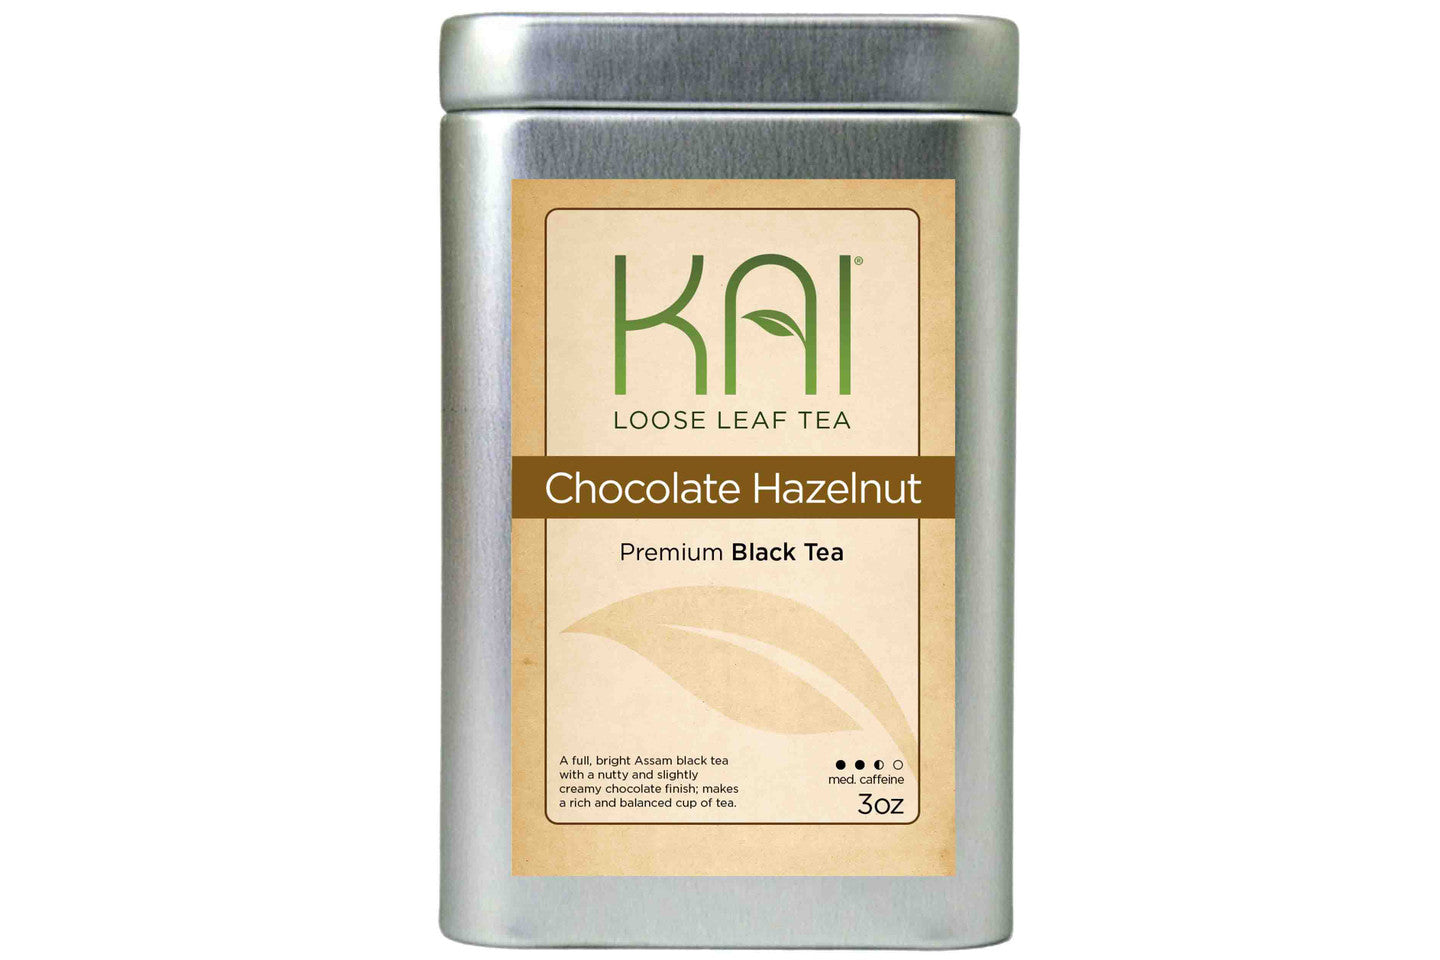 Kai loose Leaf Tea - Chocolate Hazelnut